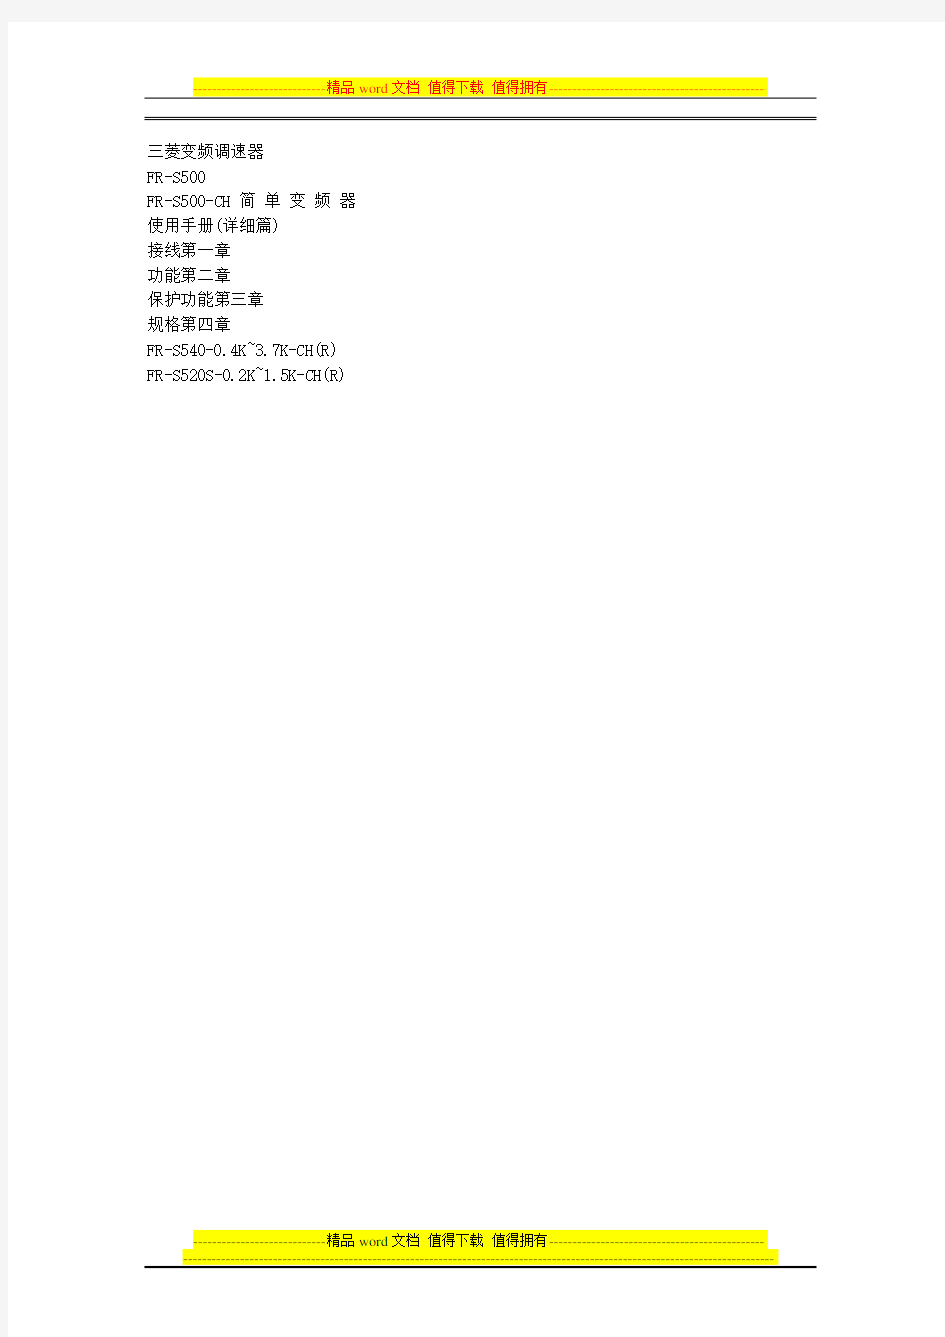 三菱变频器使用手册-FR-S540(详细篇)中文版